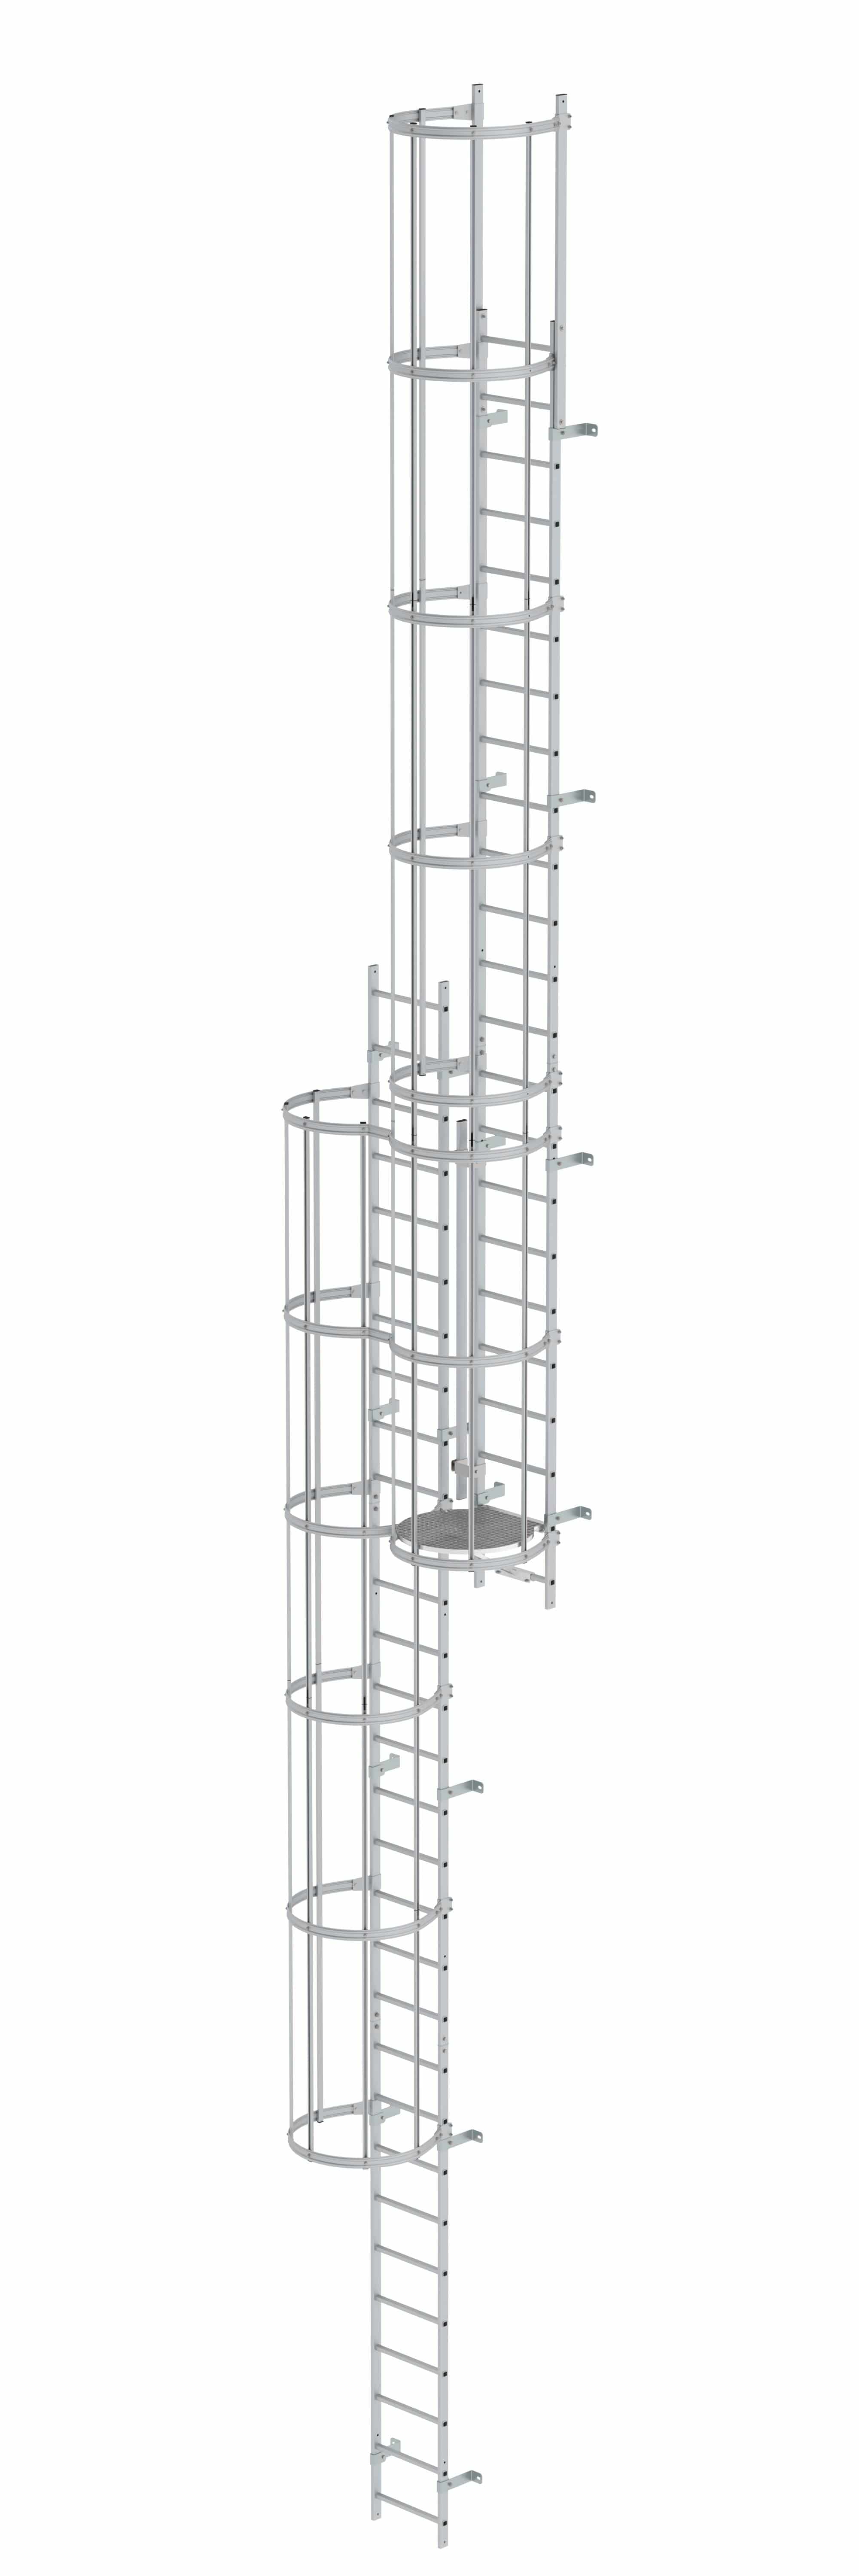 Munk Mehrzügige Steigleiter mit Rückenschutz (Maschinen) Aluminium eloxiert 12,96m